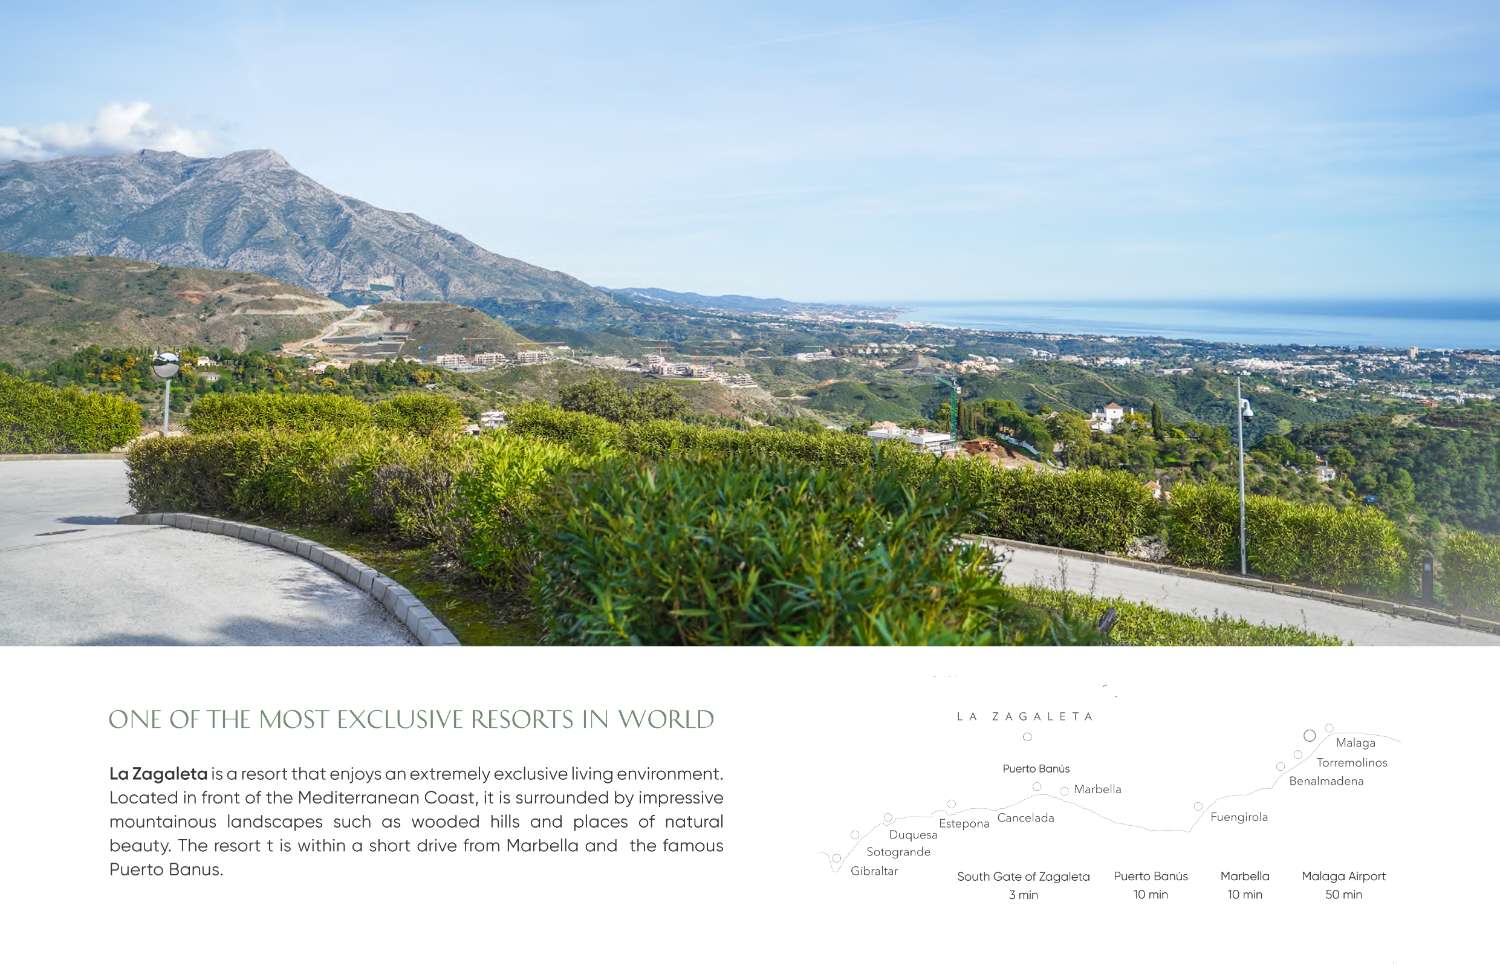 Te koop, luxe villa in La Zagaleta, met een adembenemend panoramisch uitzicht en een weelderige omgeving.